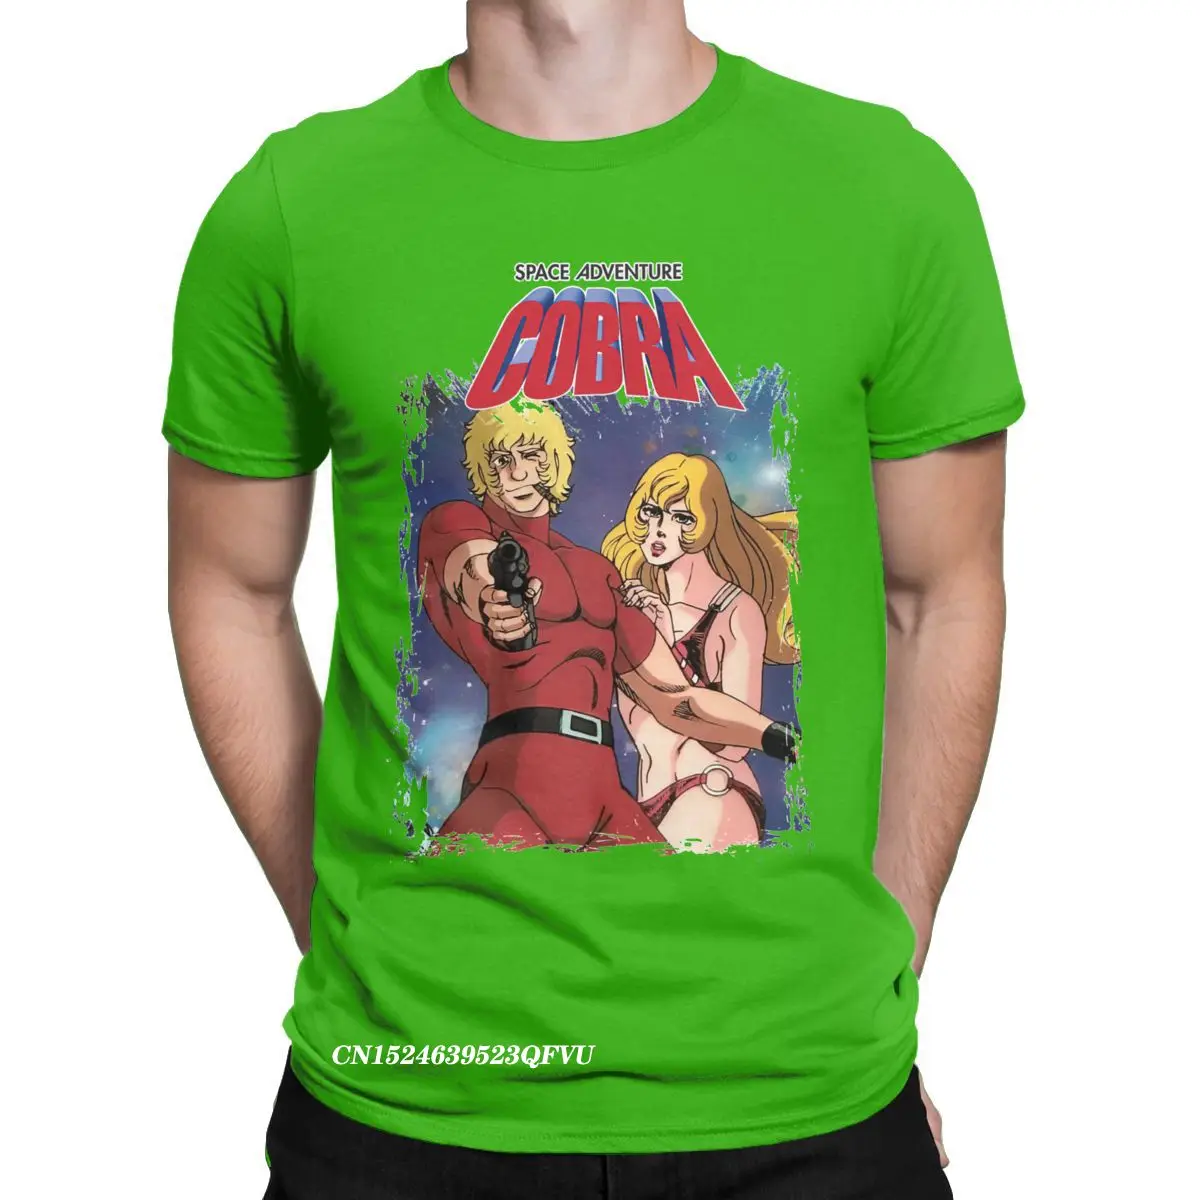 Vintage Ruimte Avontuur Cobra Anime Japanse Serie Science Fiction Tee Kleding Herenkleding Overhemden & T-shirts T-shirts T-shirts met print 